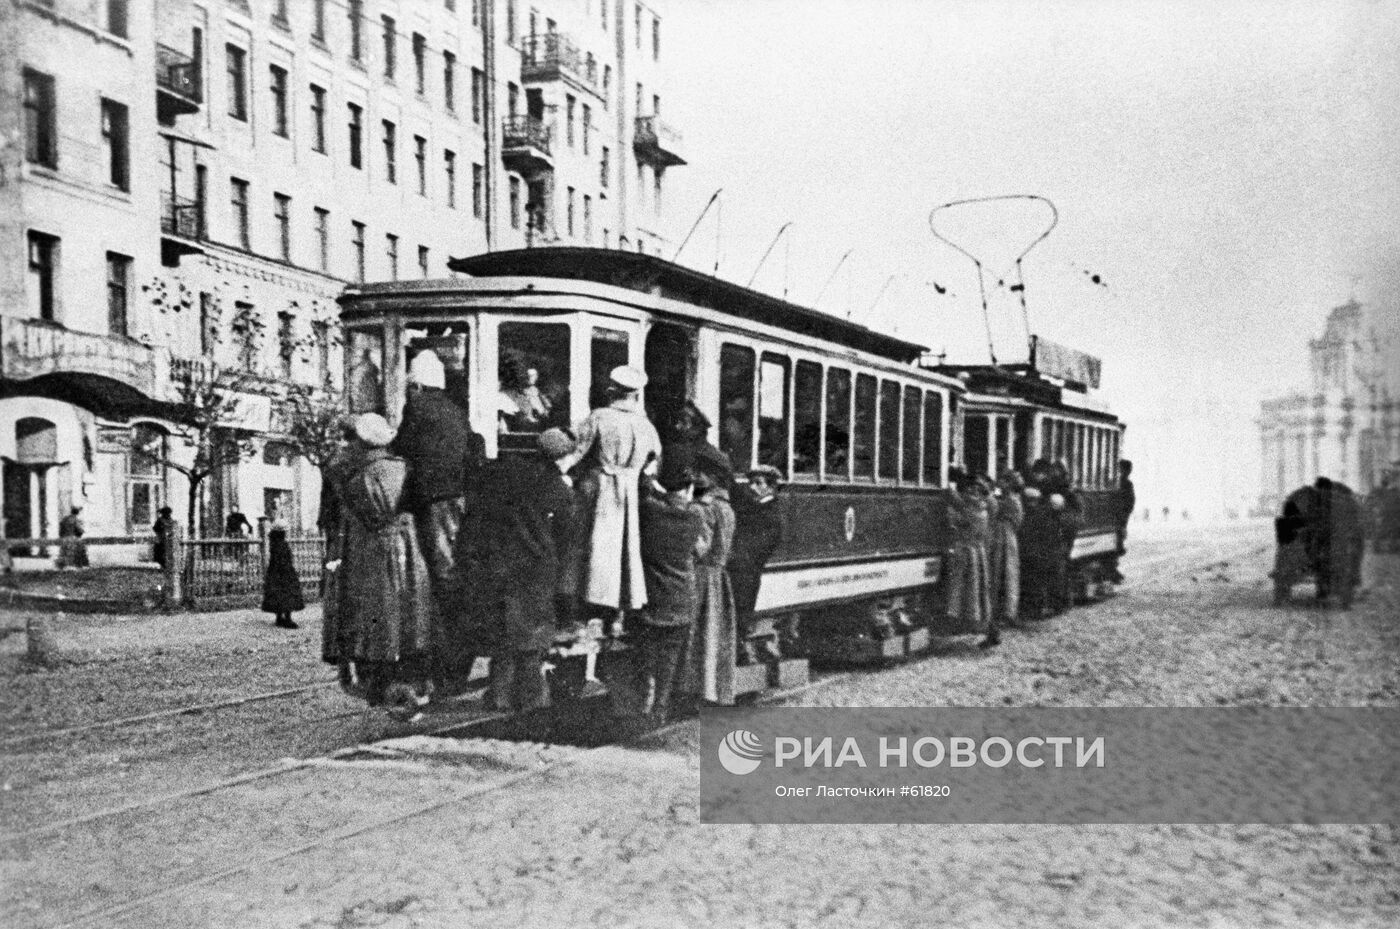 Трамвай начала 1920-х годов